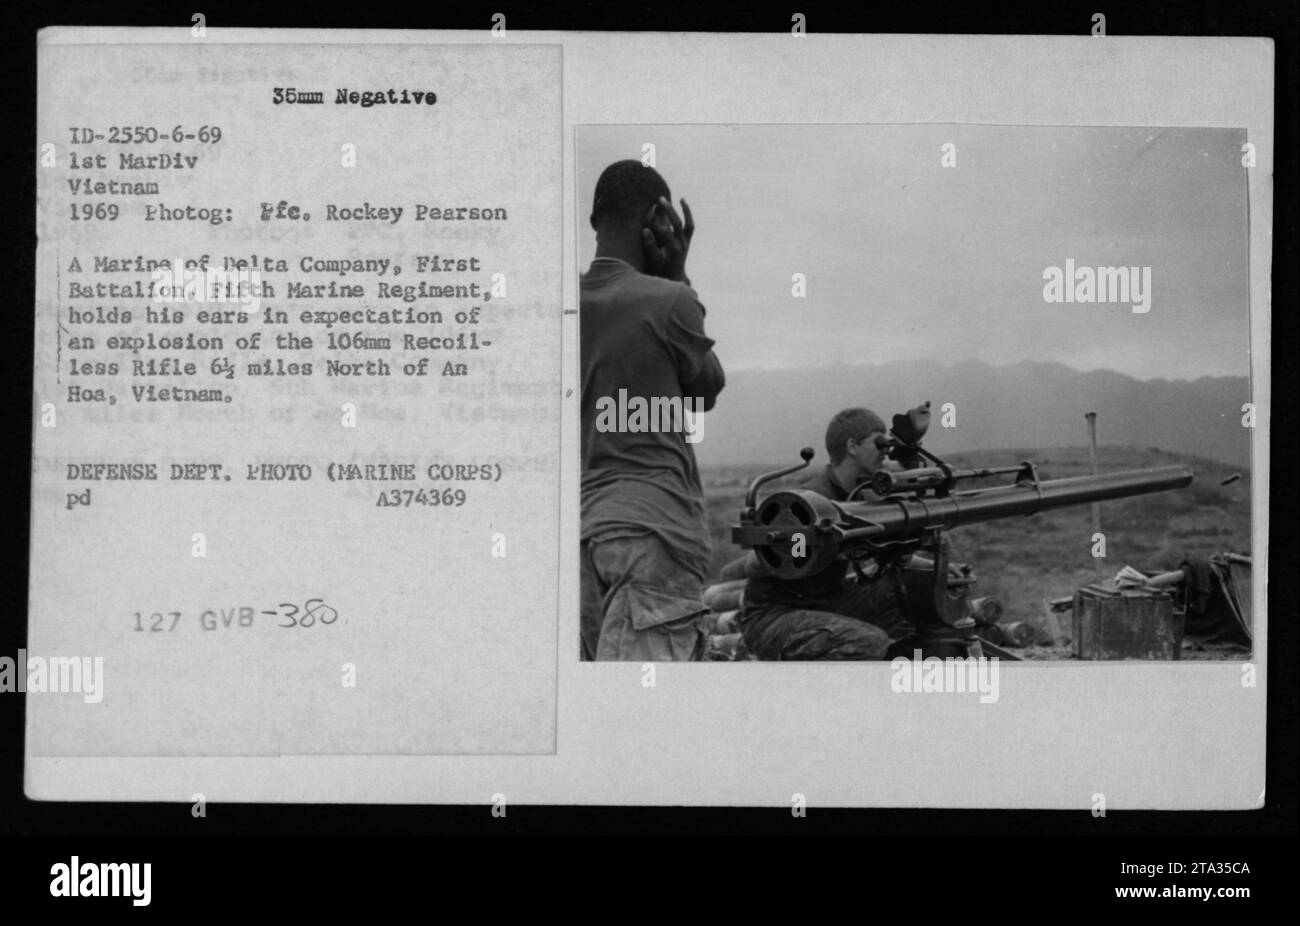 Marine der Delta-Kompanie, 1. Bataillon, 5. Marine-Regiment, bereitet sich auf die Explosion eines 106-mm-Gewehrs vor. Dieses Bild wurde 1969 während des Vietnamkriegs aufgenommen. Stockfoto